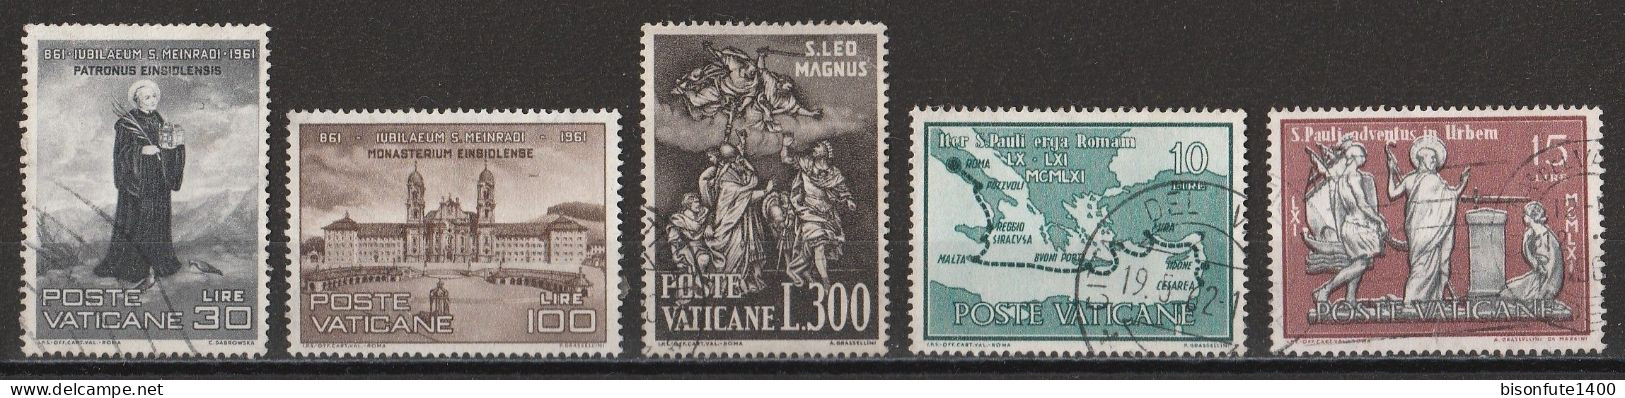 Vatican 1961 : Timbres Yvert & Tellier N° 316 - 317 - 321 - 322 - 323 - 329 - 331 - 332 - 336 Et 343 Oblitérés. - Oblitérés